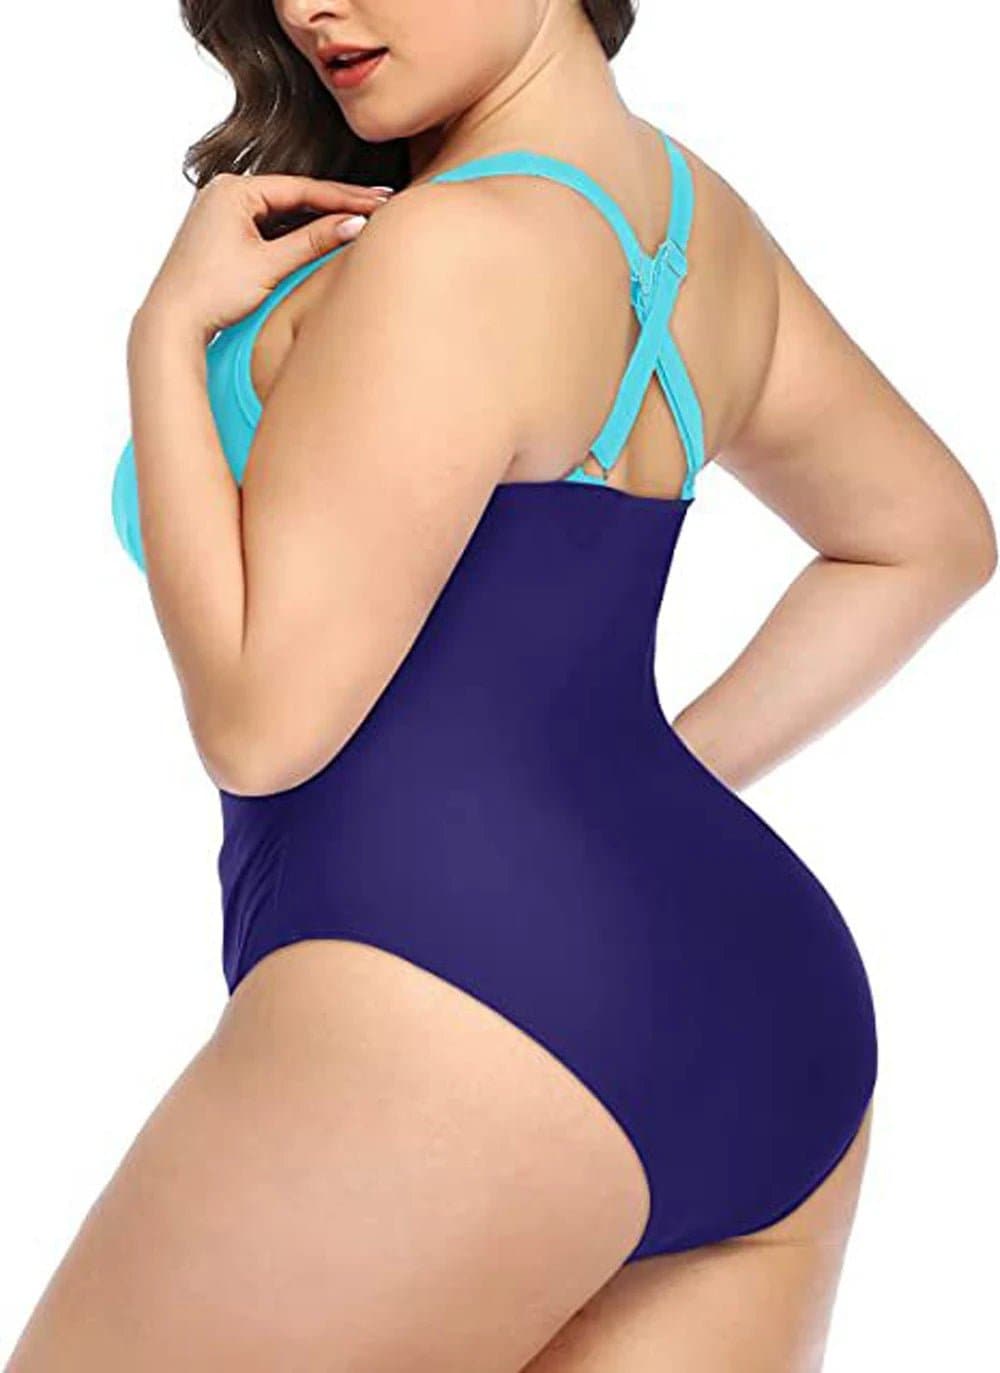 Swimwear for Full Figured Women - Floral One Piece Swimsuit - Wandering Woman